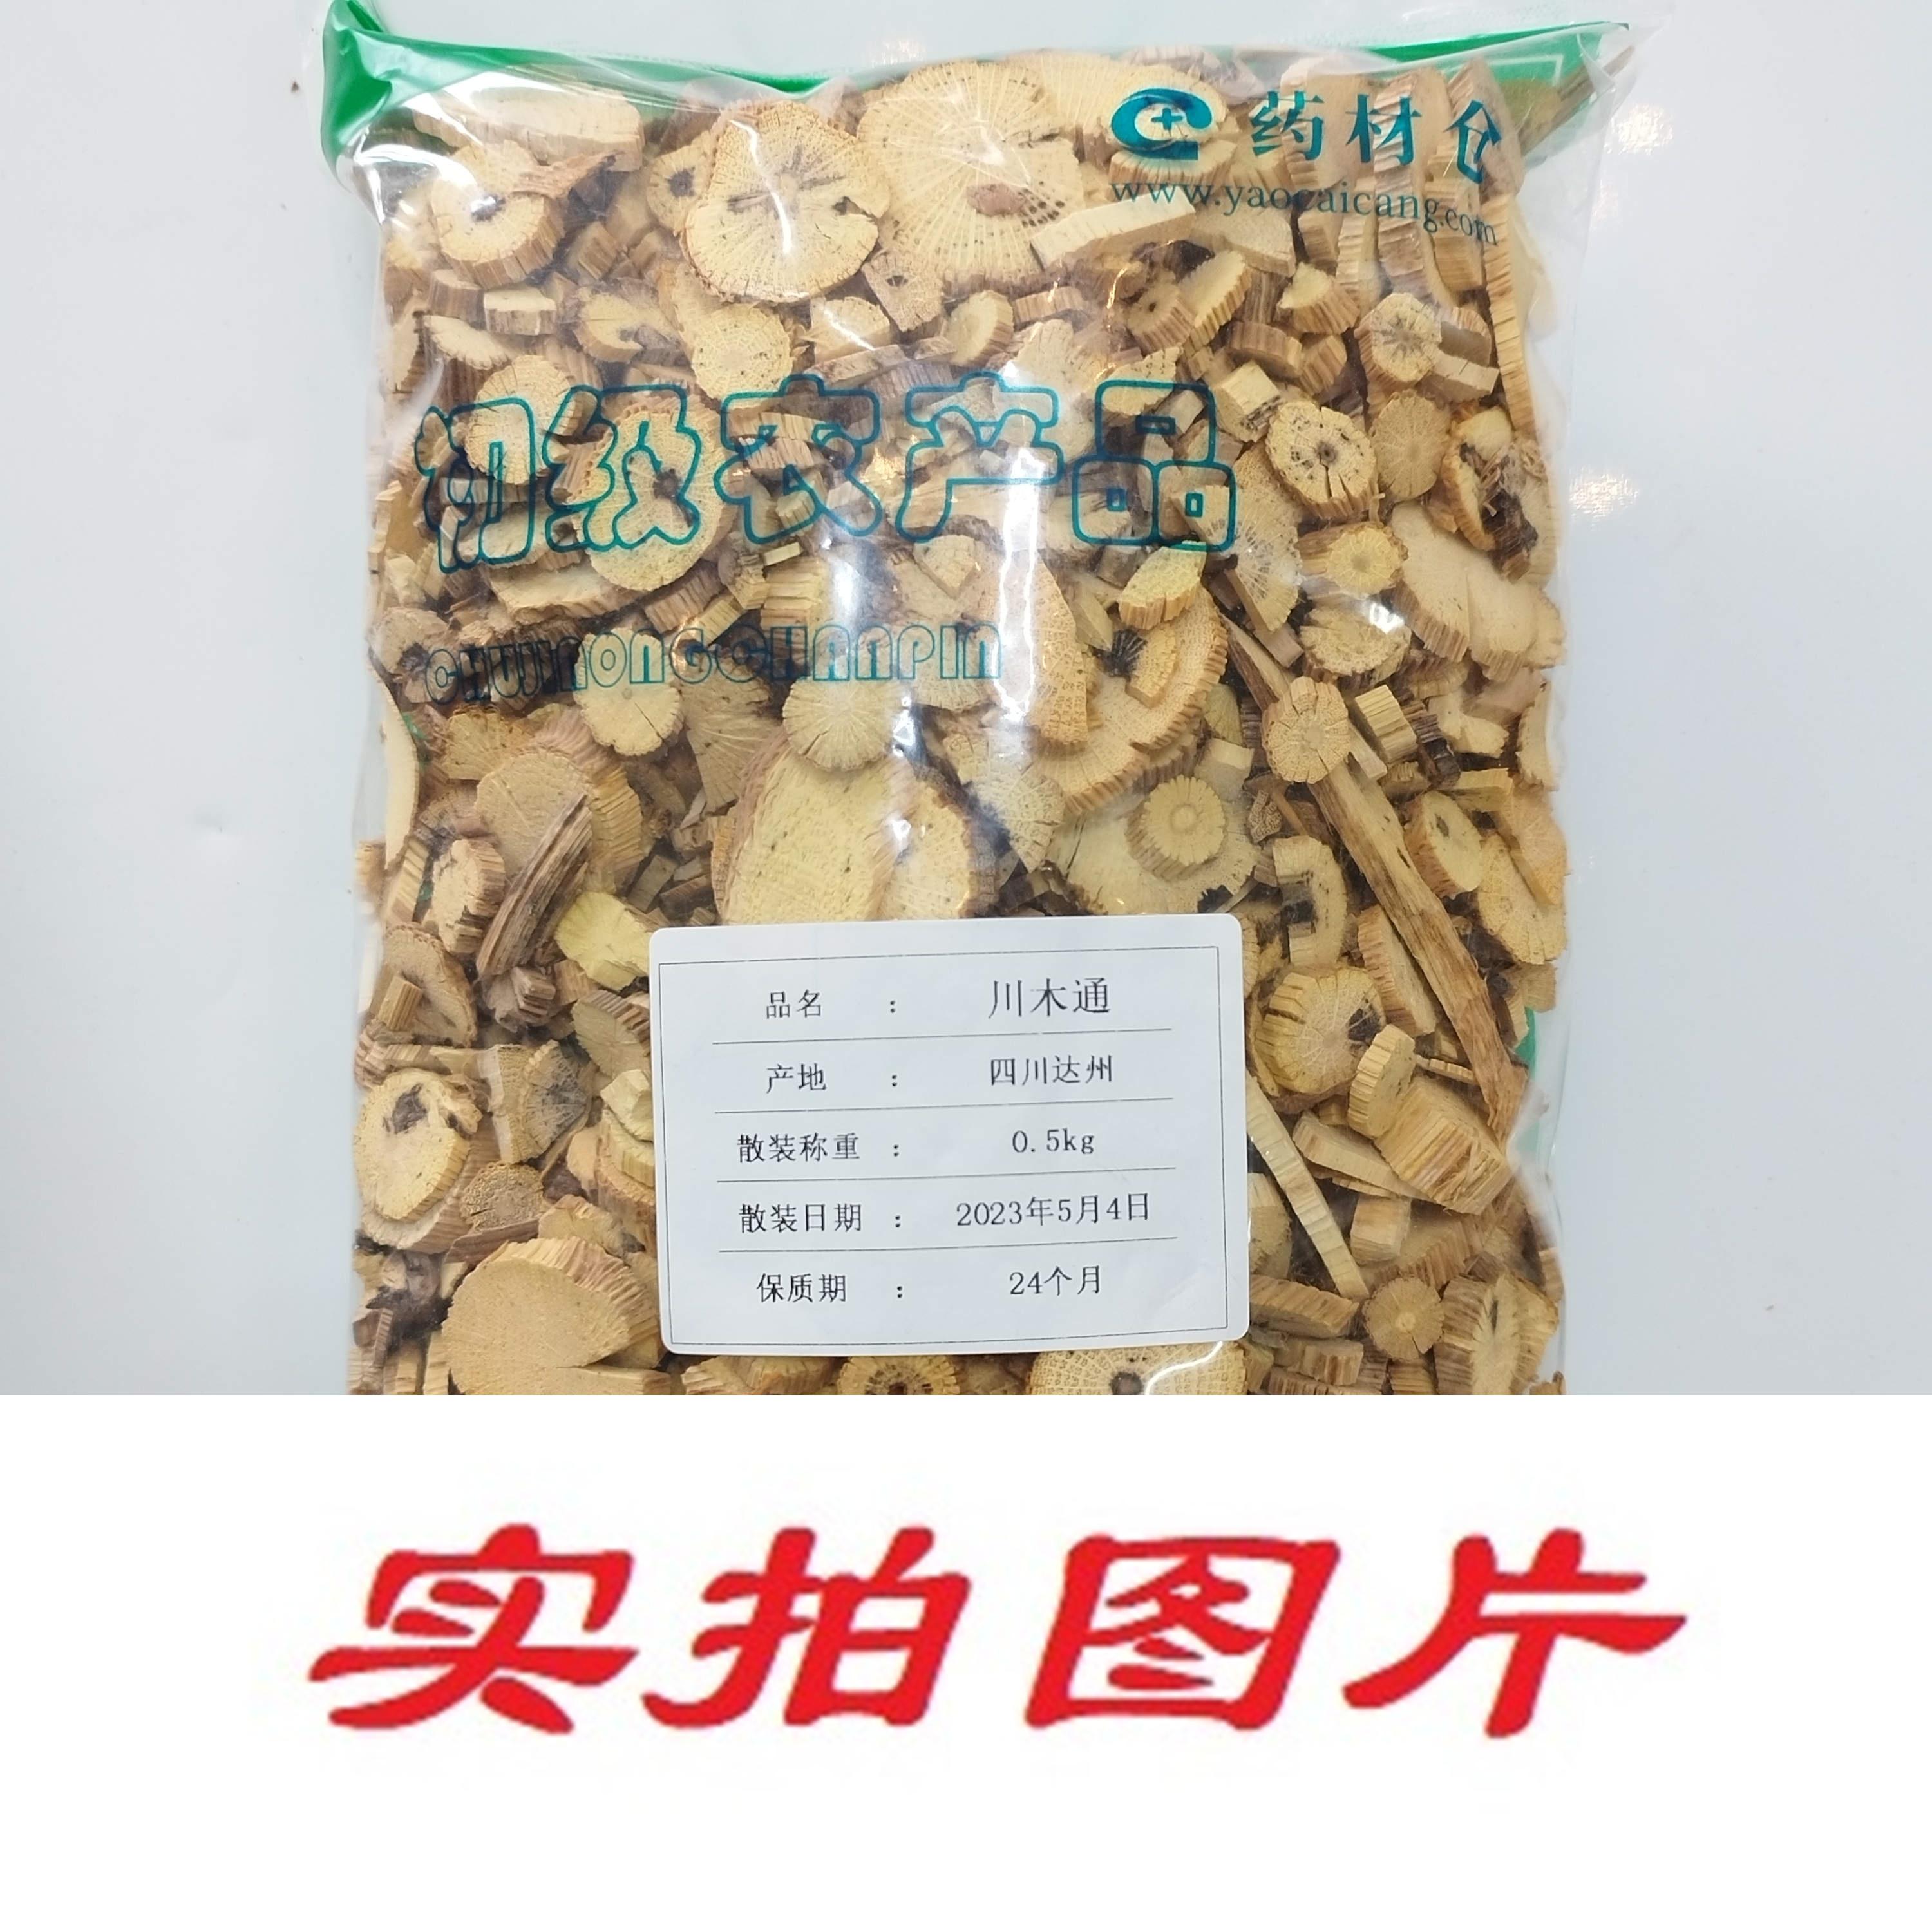 【】川木通0.5kg-农副产品